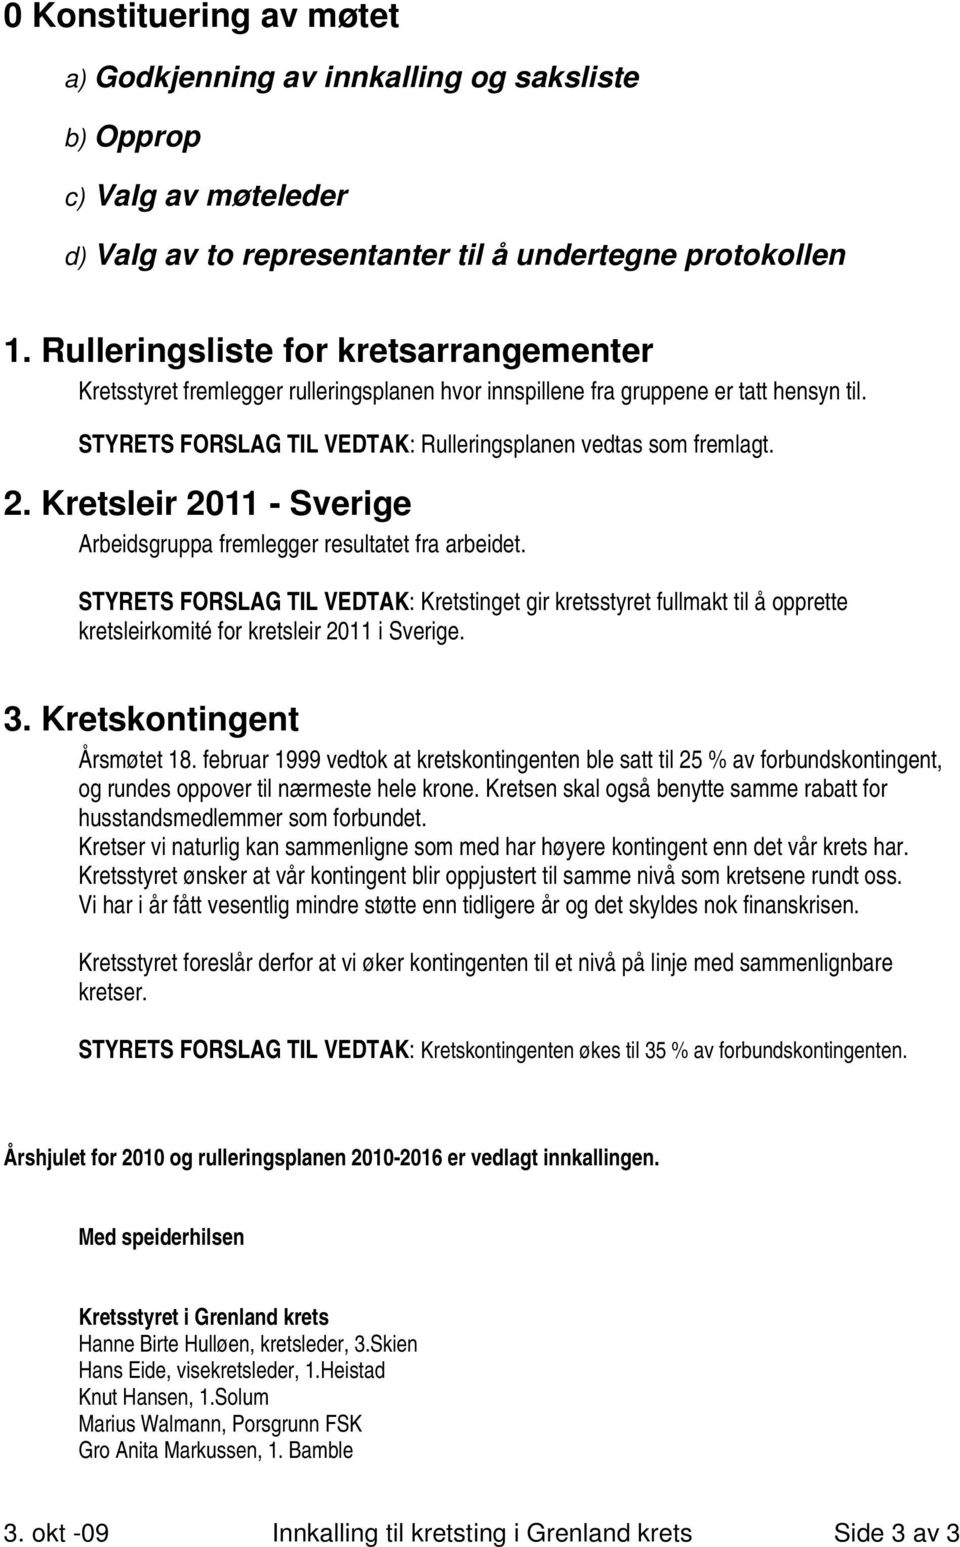 Kretsleir 2011 - Sverige Arbeidsgruppa fremlegger resultatet fra arbeidet. STYRETS FORSLAG TIL VEDTAK: Kretstinget gir kretsstyret fullmakt til å opprette kretsleirkomité for kretsleir 2011 i Sverige.